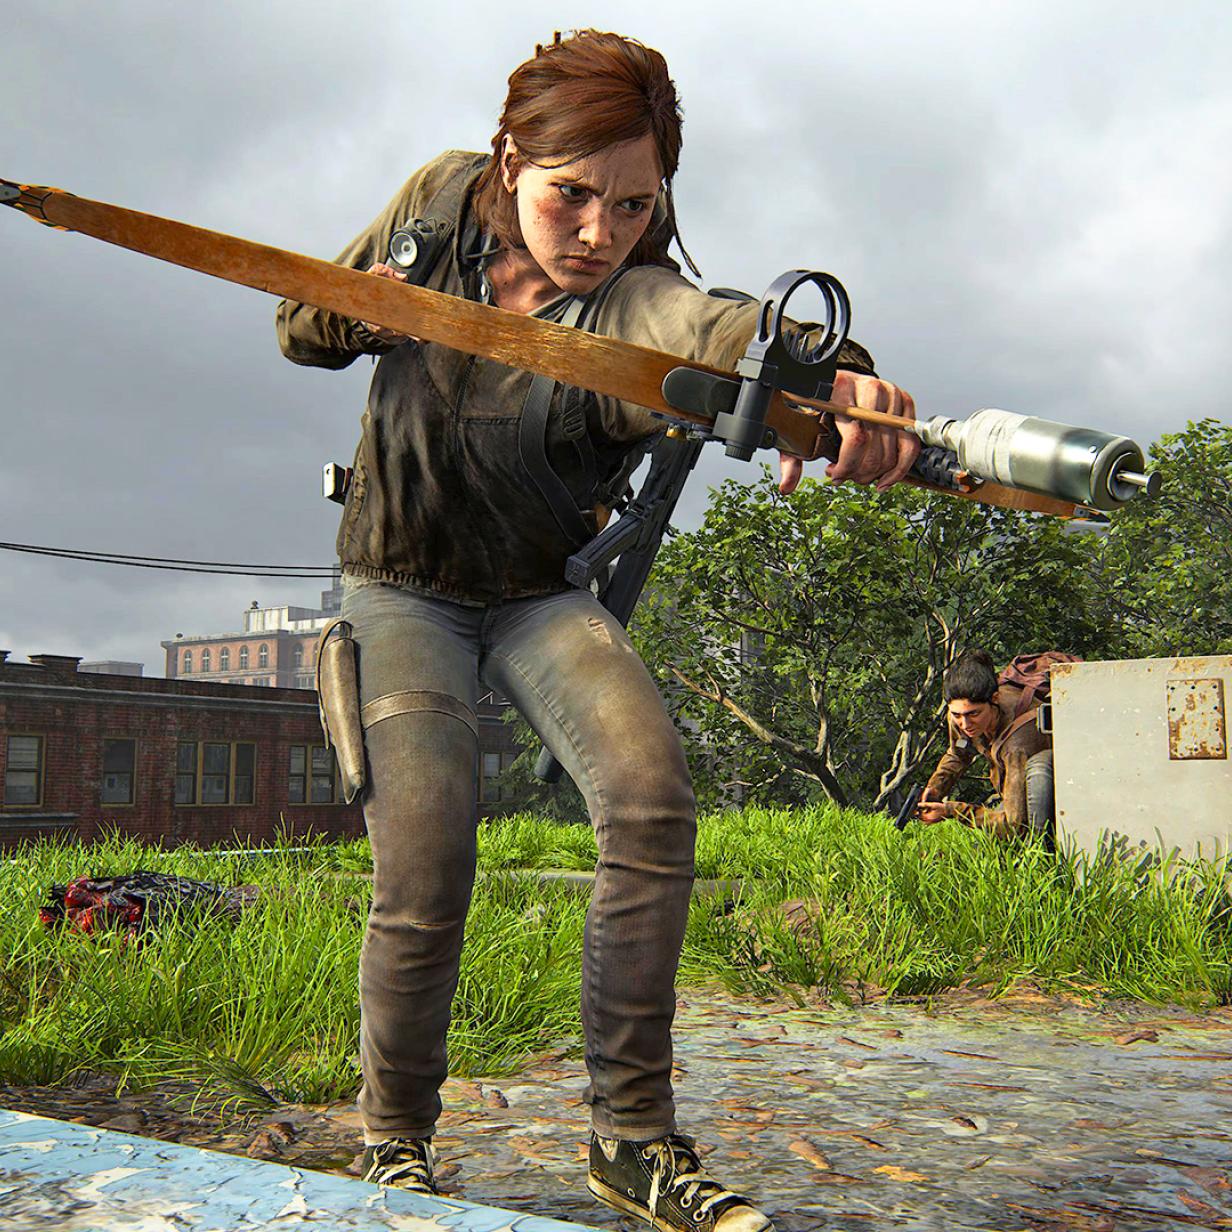 The Last of Us 2: Nach nur drei Jahren kommt ein Remaster, das